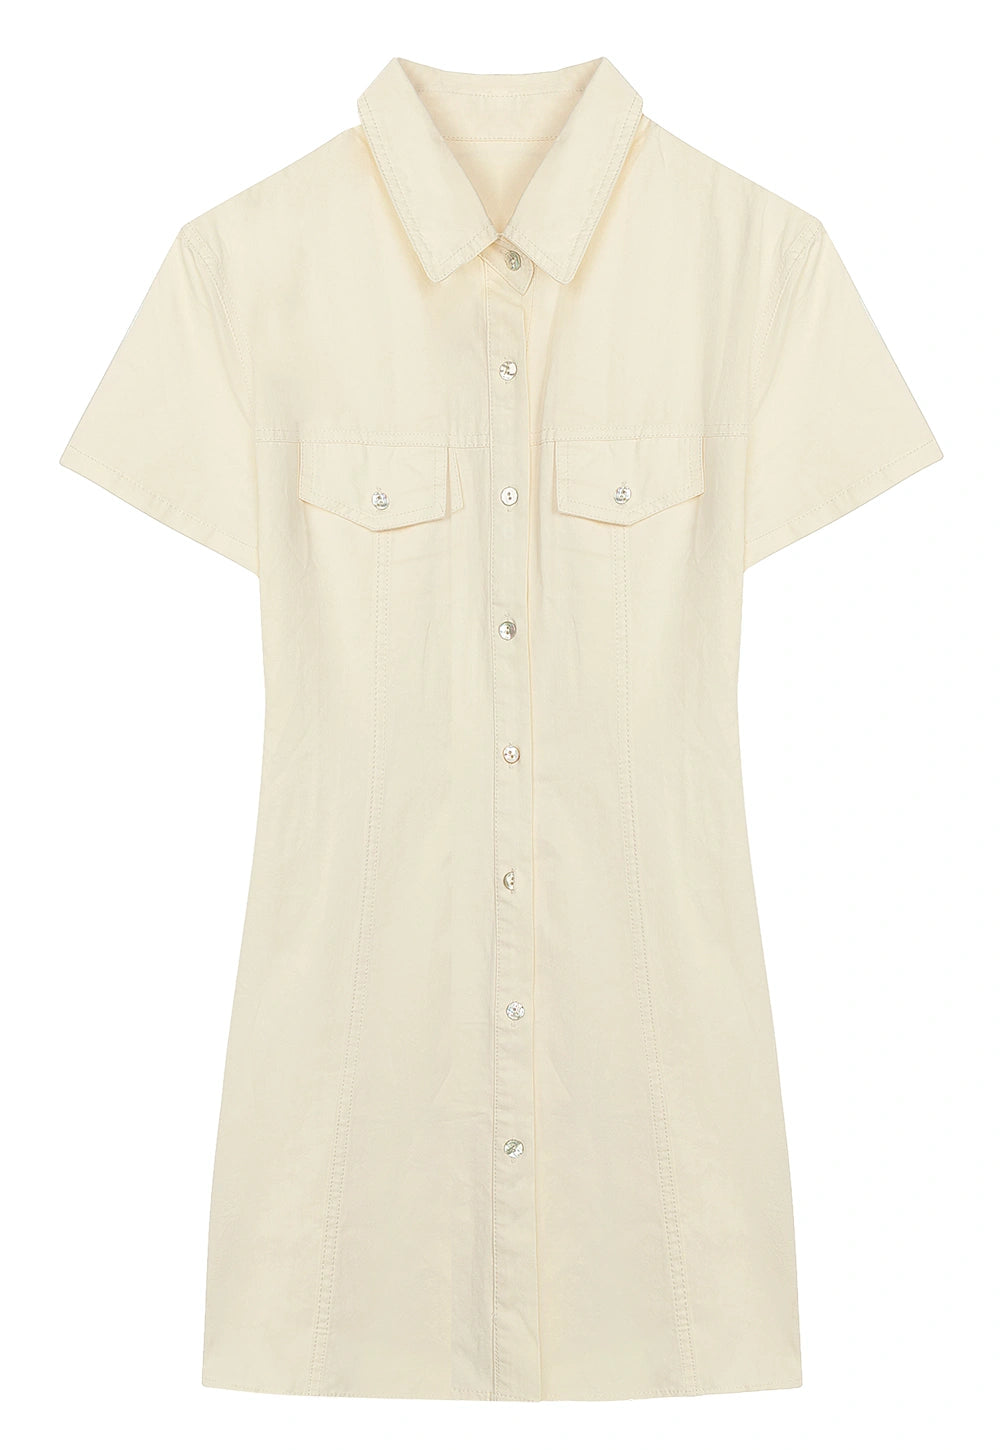 Women's Short Sleeve Button-Down Shirt Dress with Pockets